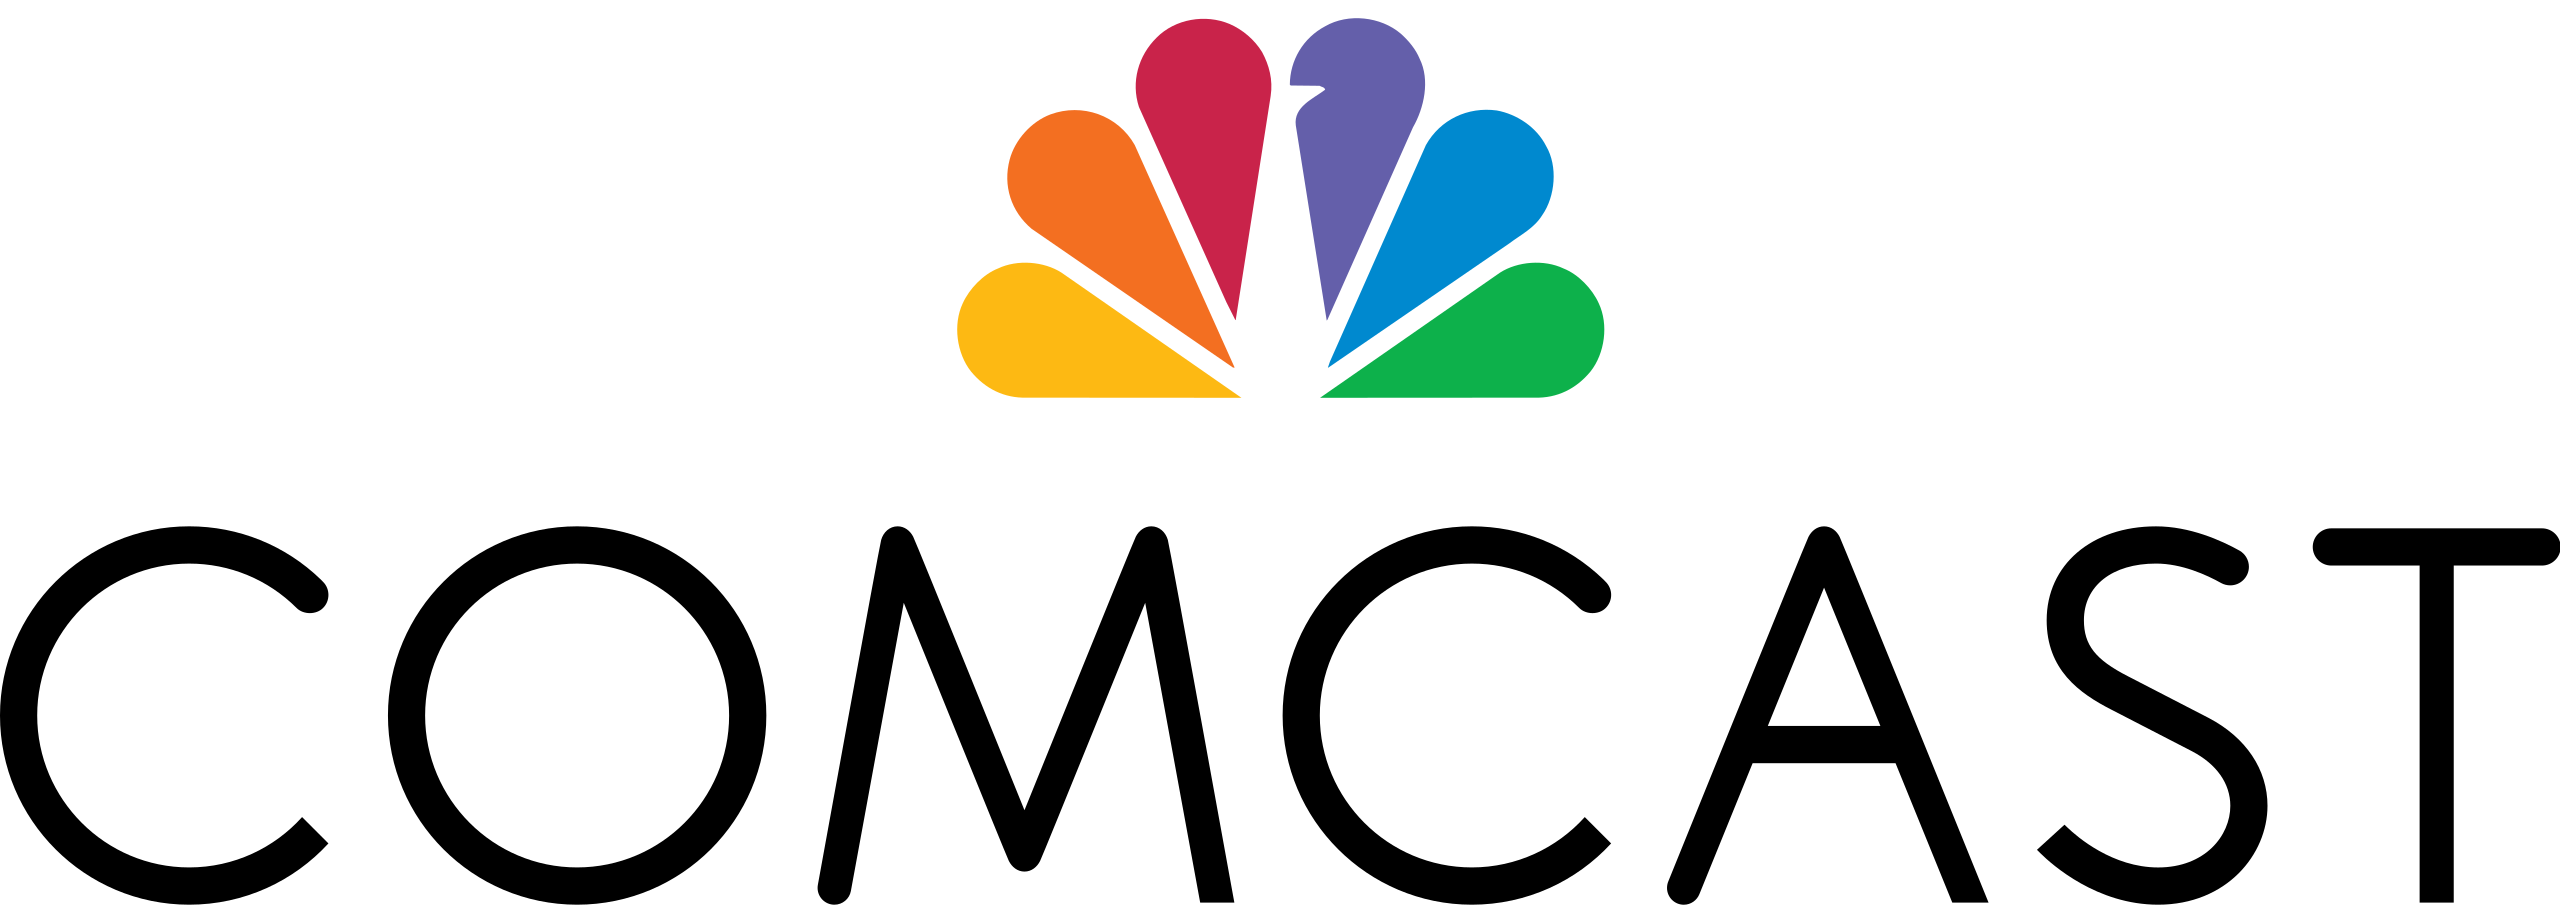 Comcast logo (color)